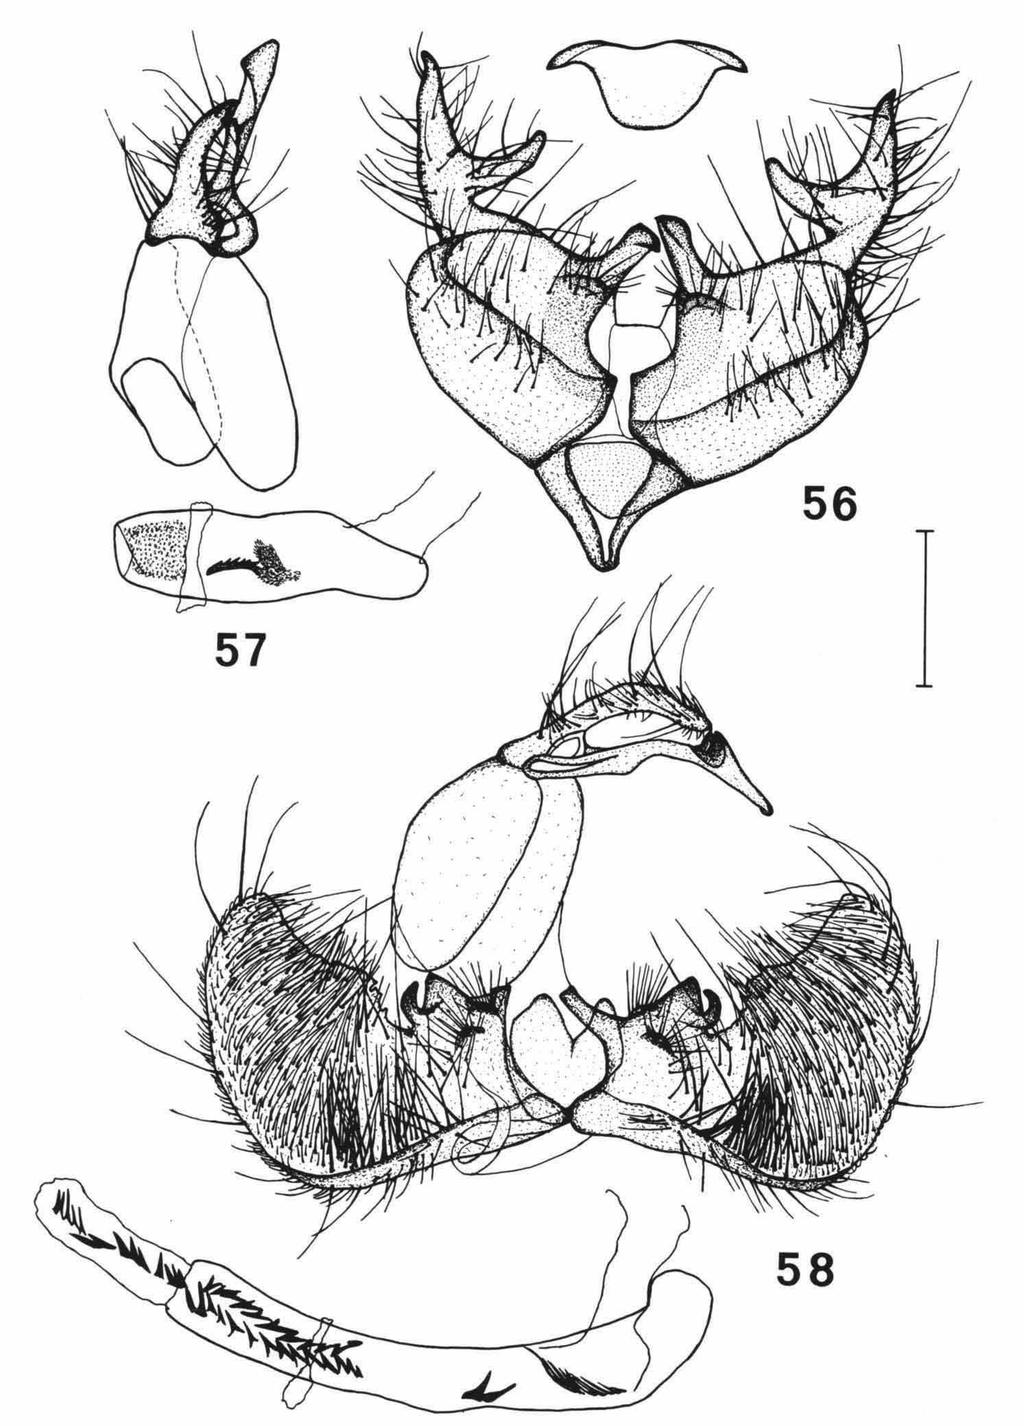 SCHOUTEN: EUCHROMIUS 51 Figs. 56-58. Male genitalia; ventro-caudal aspect, valvae spread; aedoeagus separated, lateral aspect; juxta separated, ventro-caudal aspect.